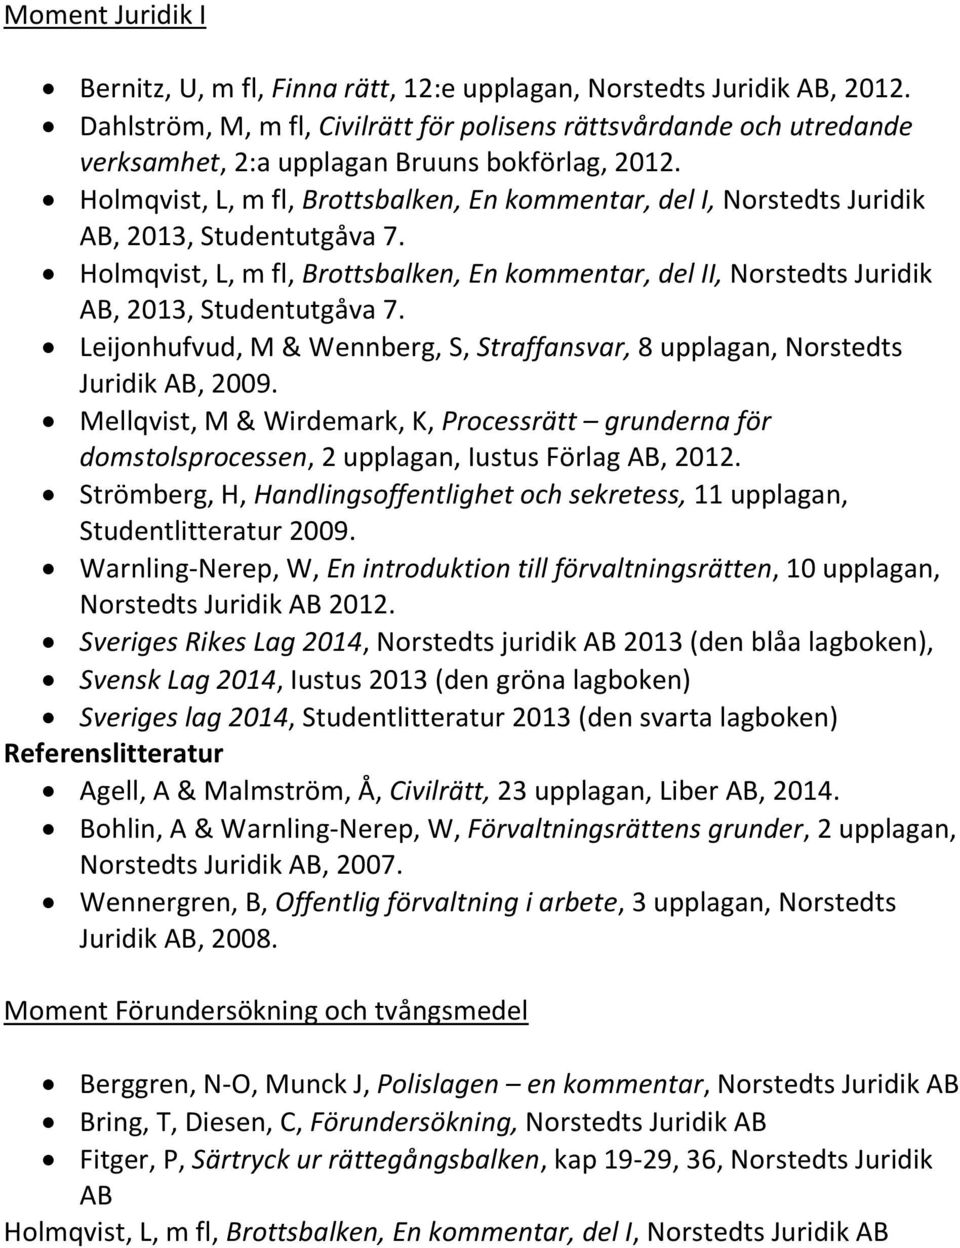 Holmqvist, L, m fl, Brottsbalken, En kommentar, del I, Norstedts Juridik AB, 2013, Studentutgåva 7. Holmqvist, L, m fl, Brottsbalken, En kommentar, del II, Norstedts Juridik AB, 2013, Studentutgåva 7.